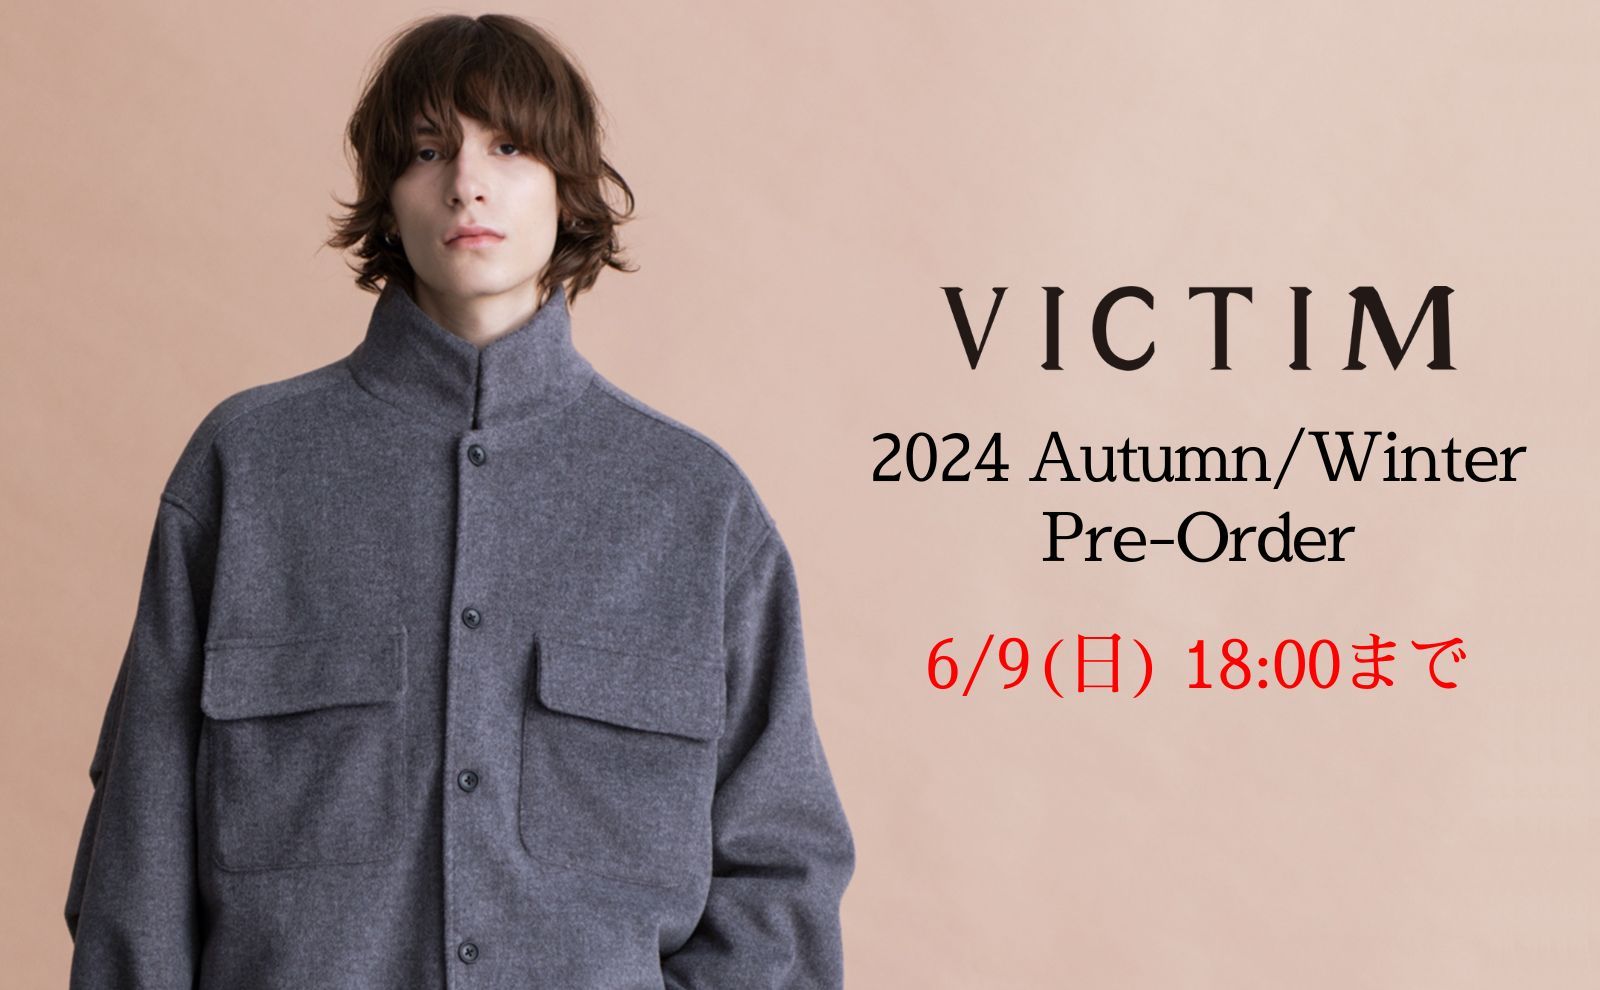 【返品無料】VICTIM&CO. ヴィクティム 日本製 ウール チェック ネルシャツ L トップス